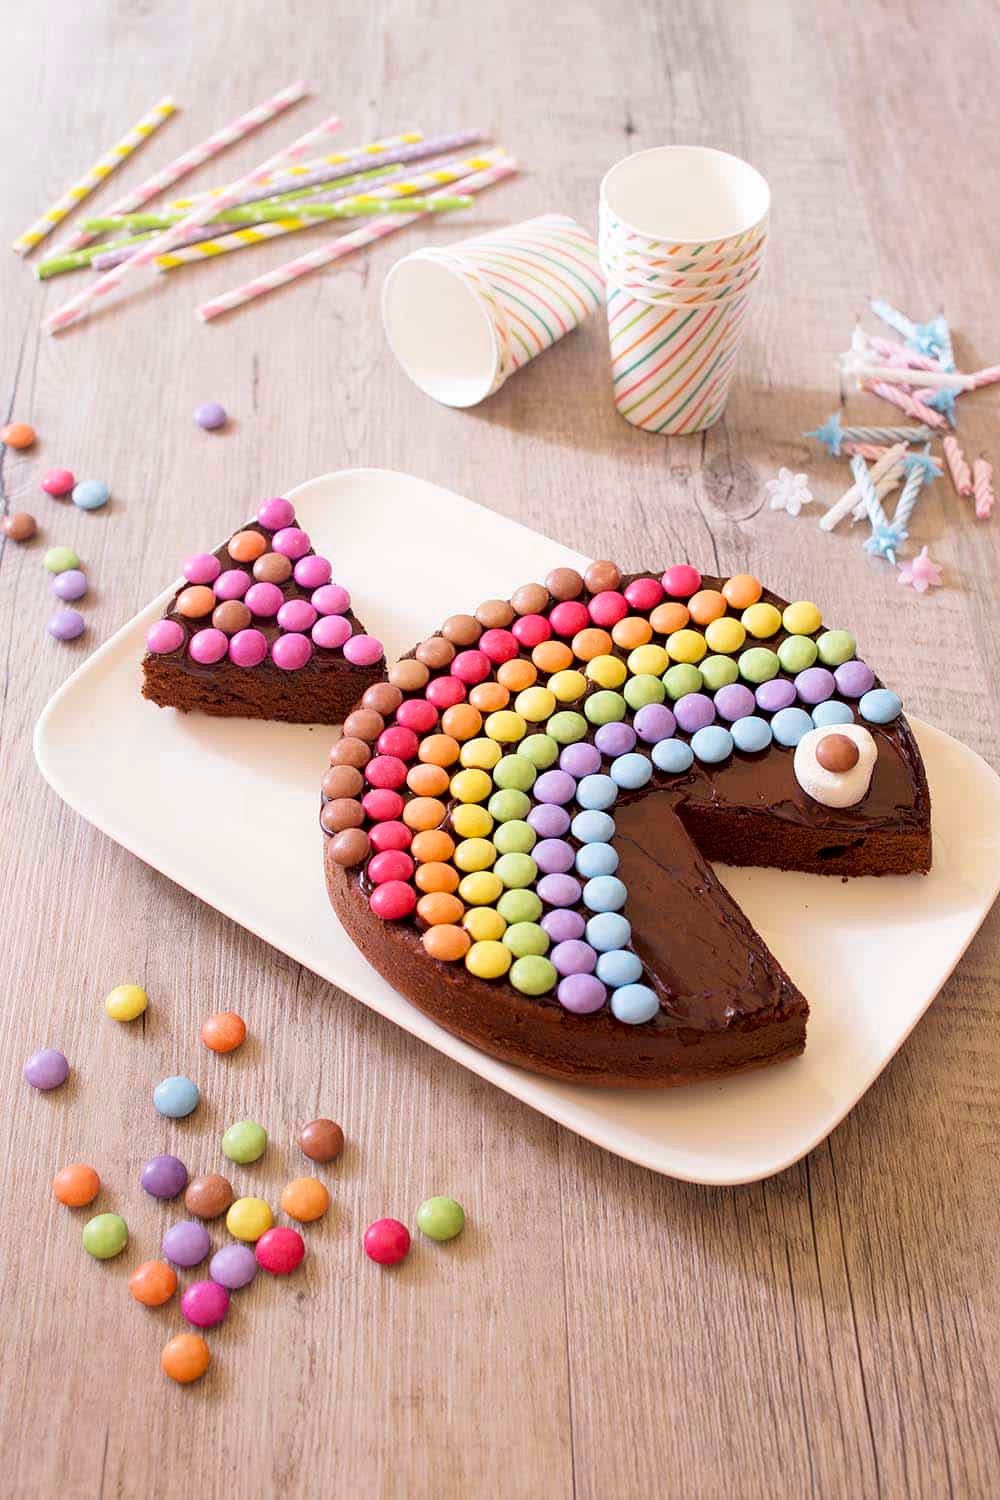 Faire un gâteau d'anniversaire : recette et décoration